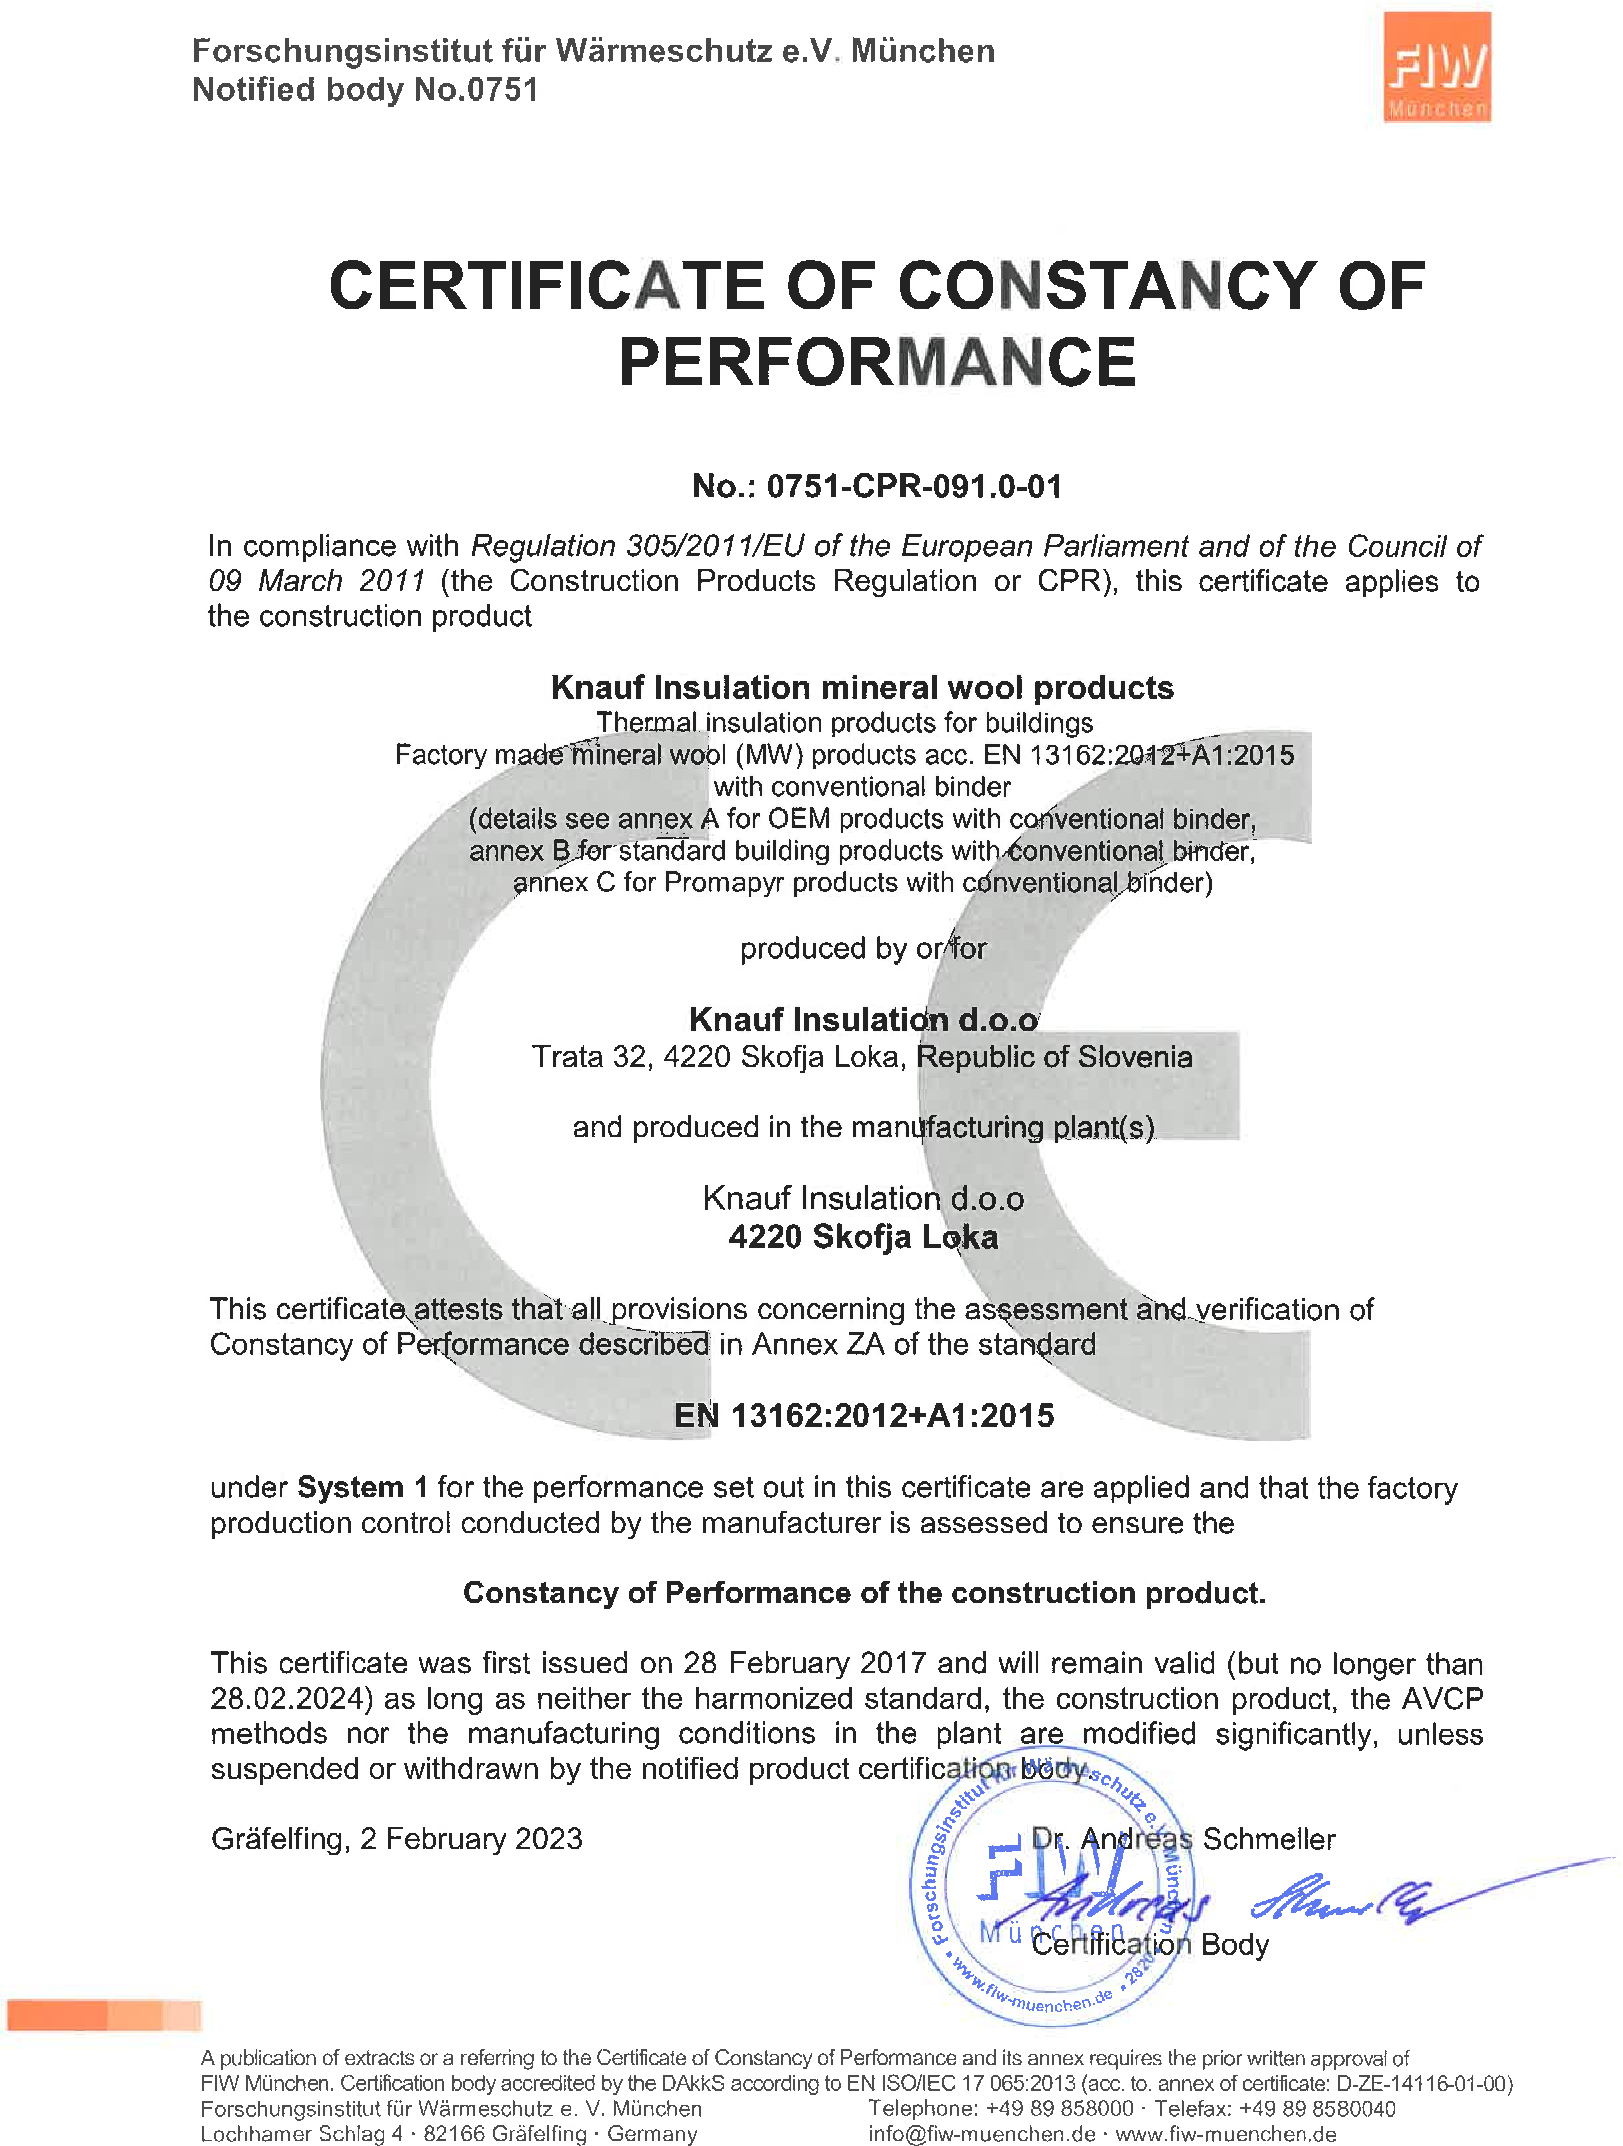 Certificate of constancy of performance - 0751-CPR-091.0-01 - Skofja Loka - 02_02_2023